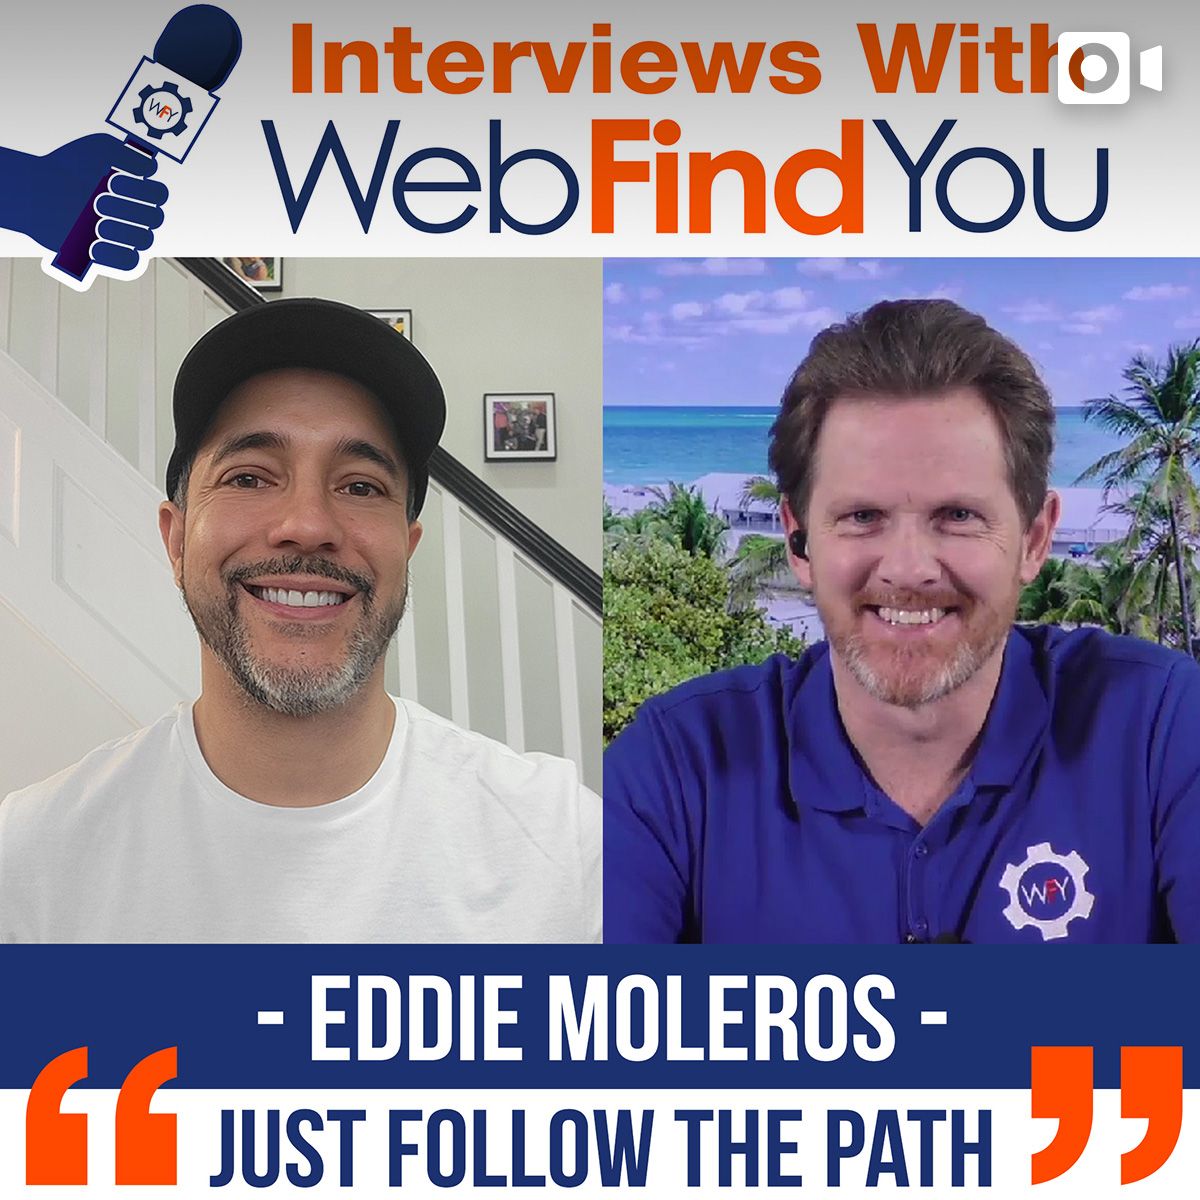 Eddie Moleros' Interview